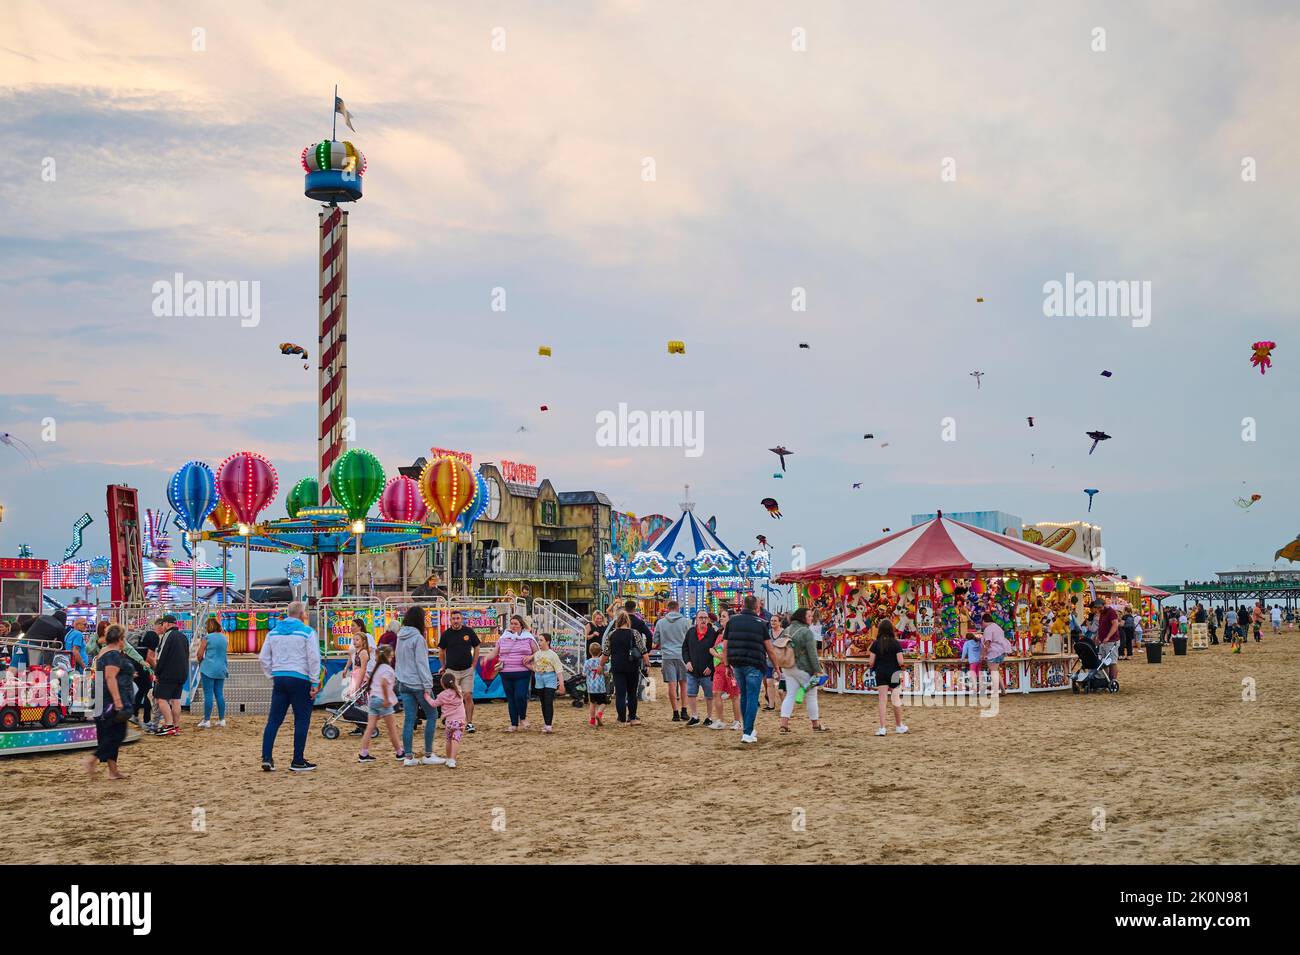 St Annes Festival Internacional de cometas celebrado en la playa en septiembre. Cometas volando al atardecer Foto de stock